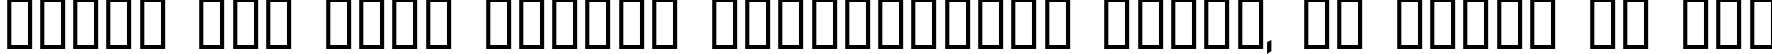 Пример написания шрифтом Abstrakt текста на русском